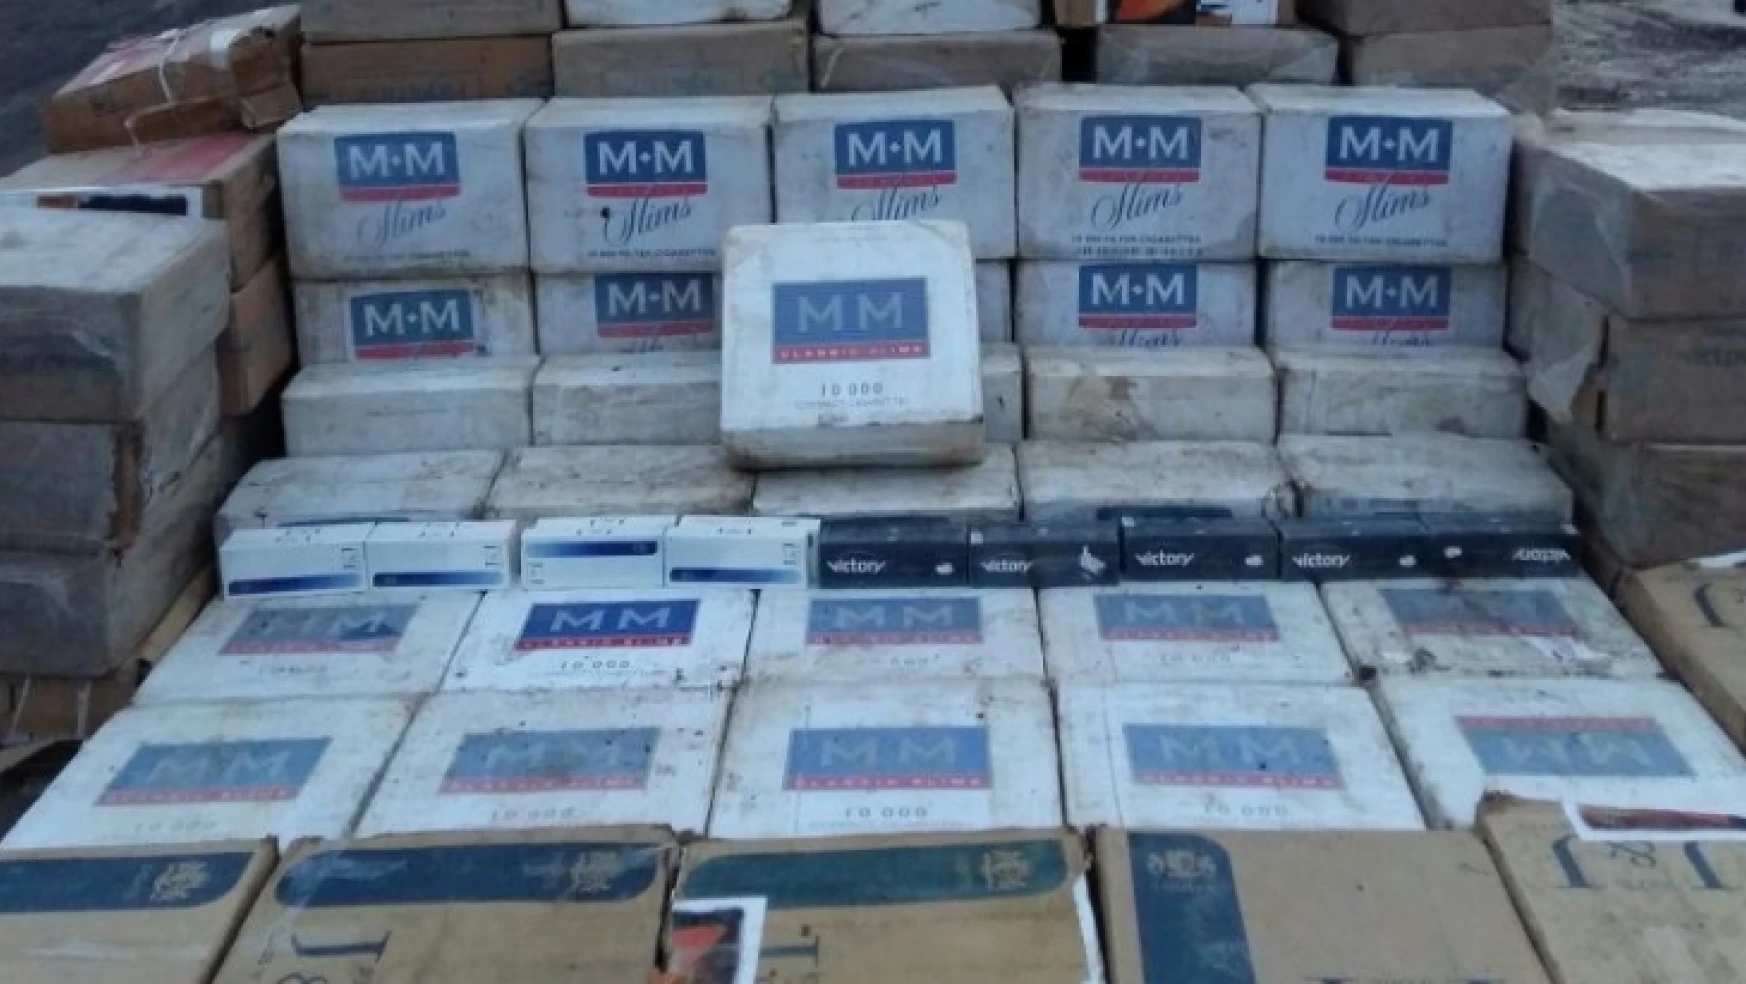 Darende'de 4 bin paket kaçak sigara ele geçirildi